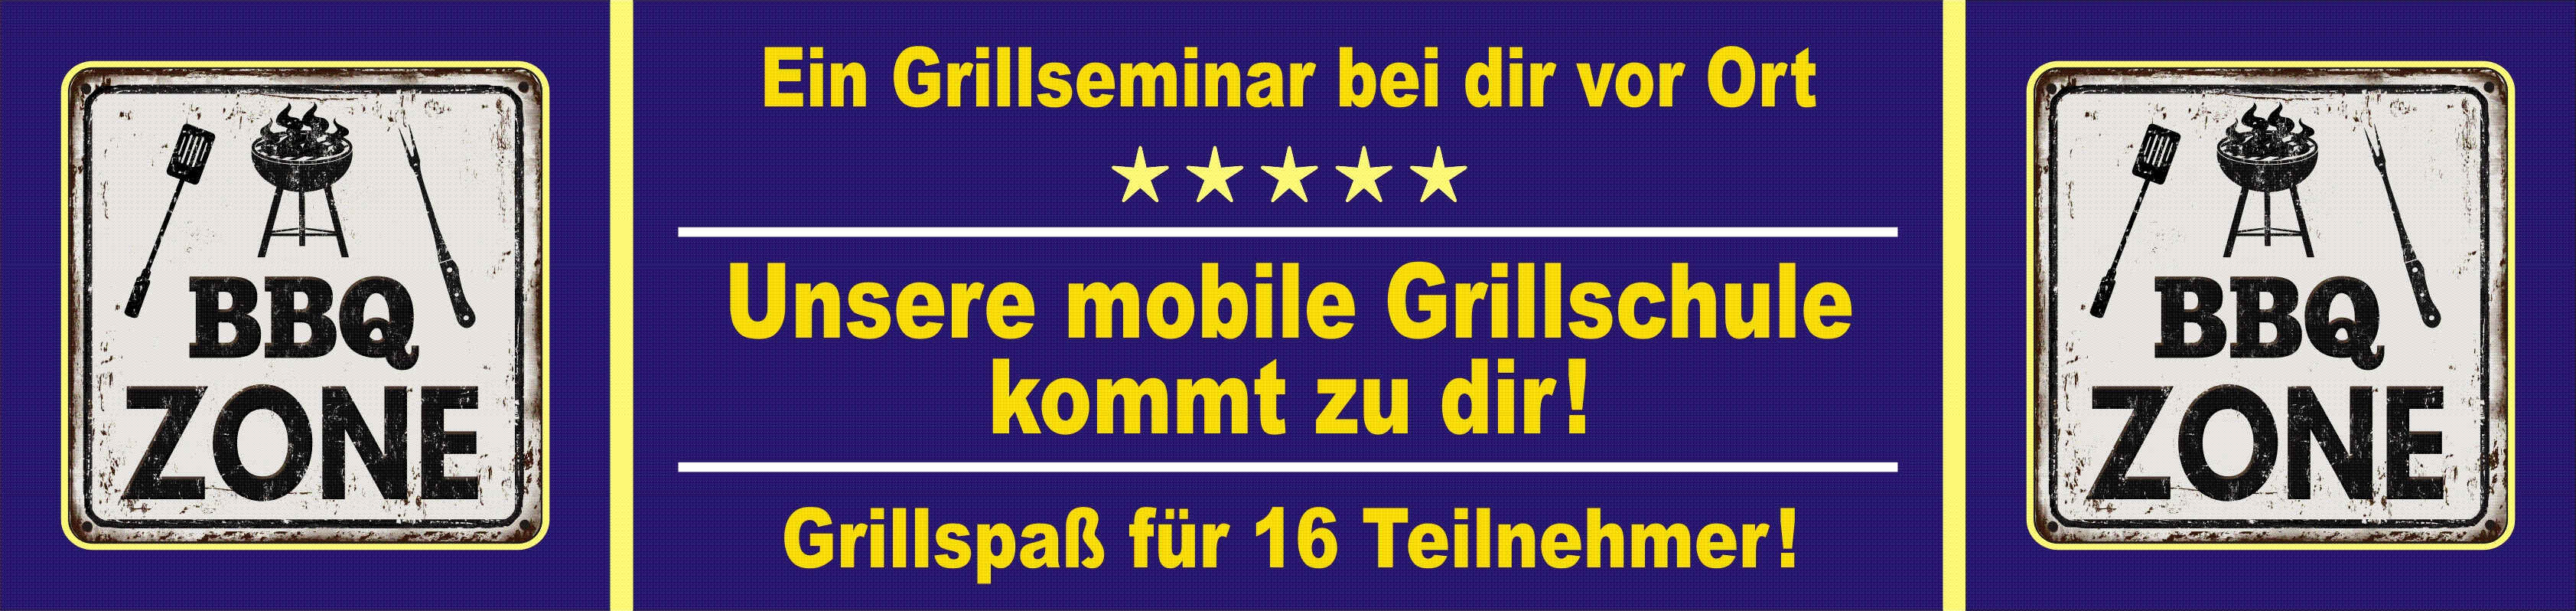 Ein Grillkurs bei dir vor Ort +++ Unsere mobile Grillschule kommt zu dir +++ 